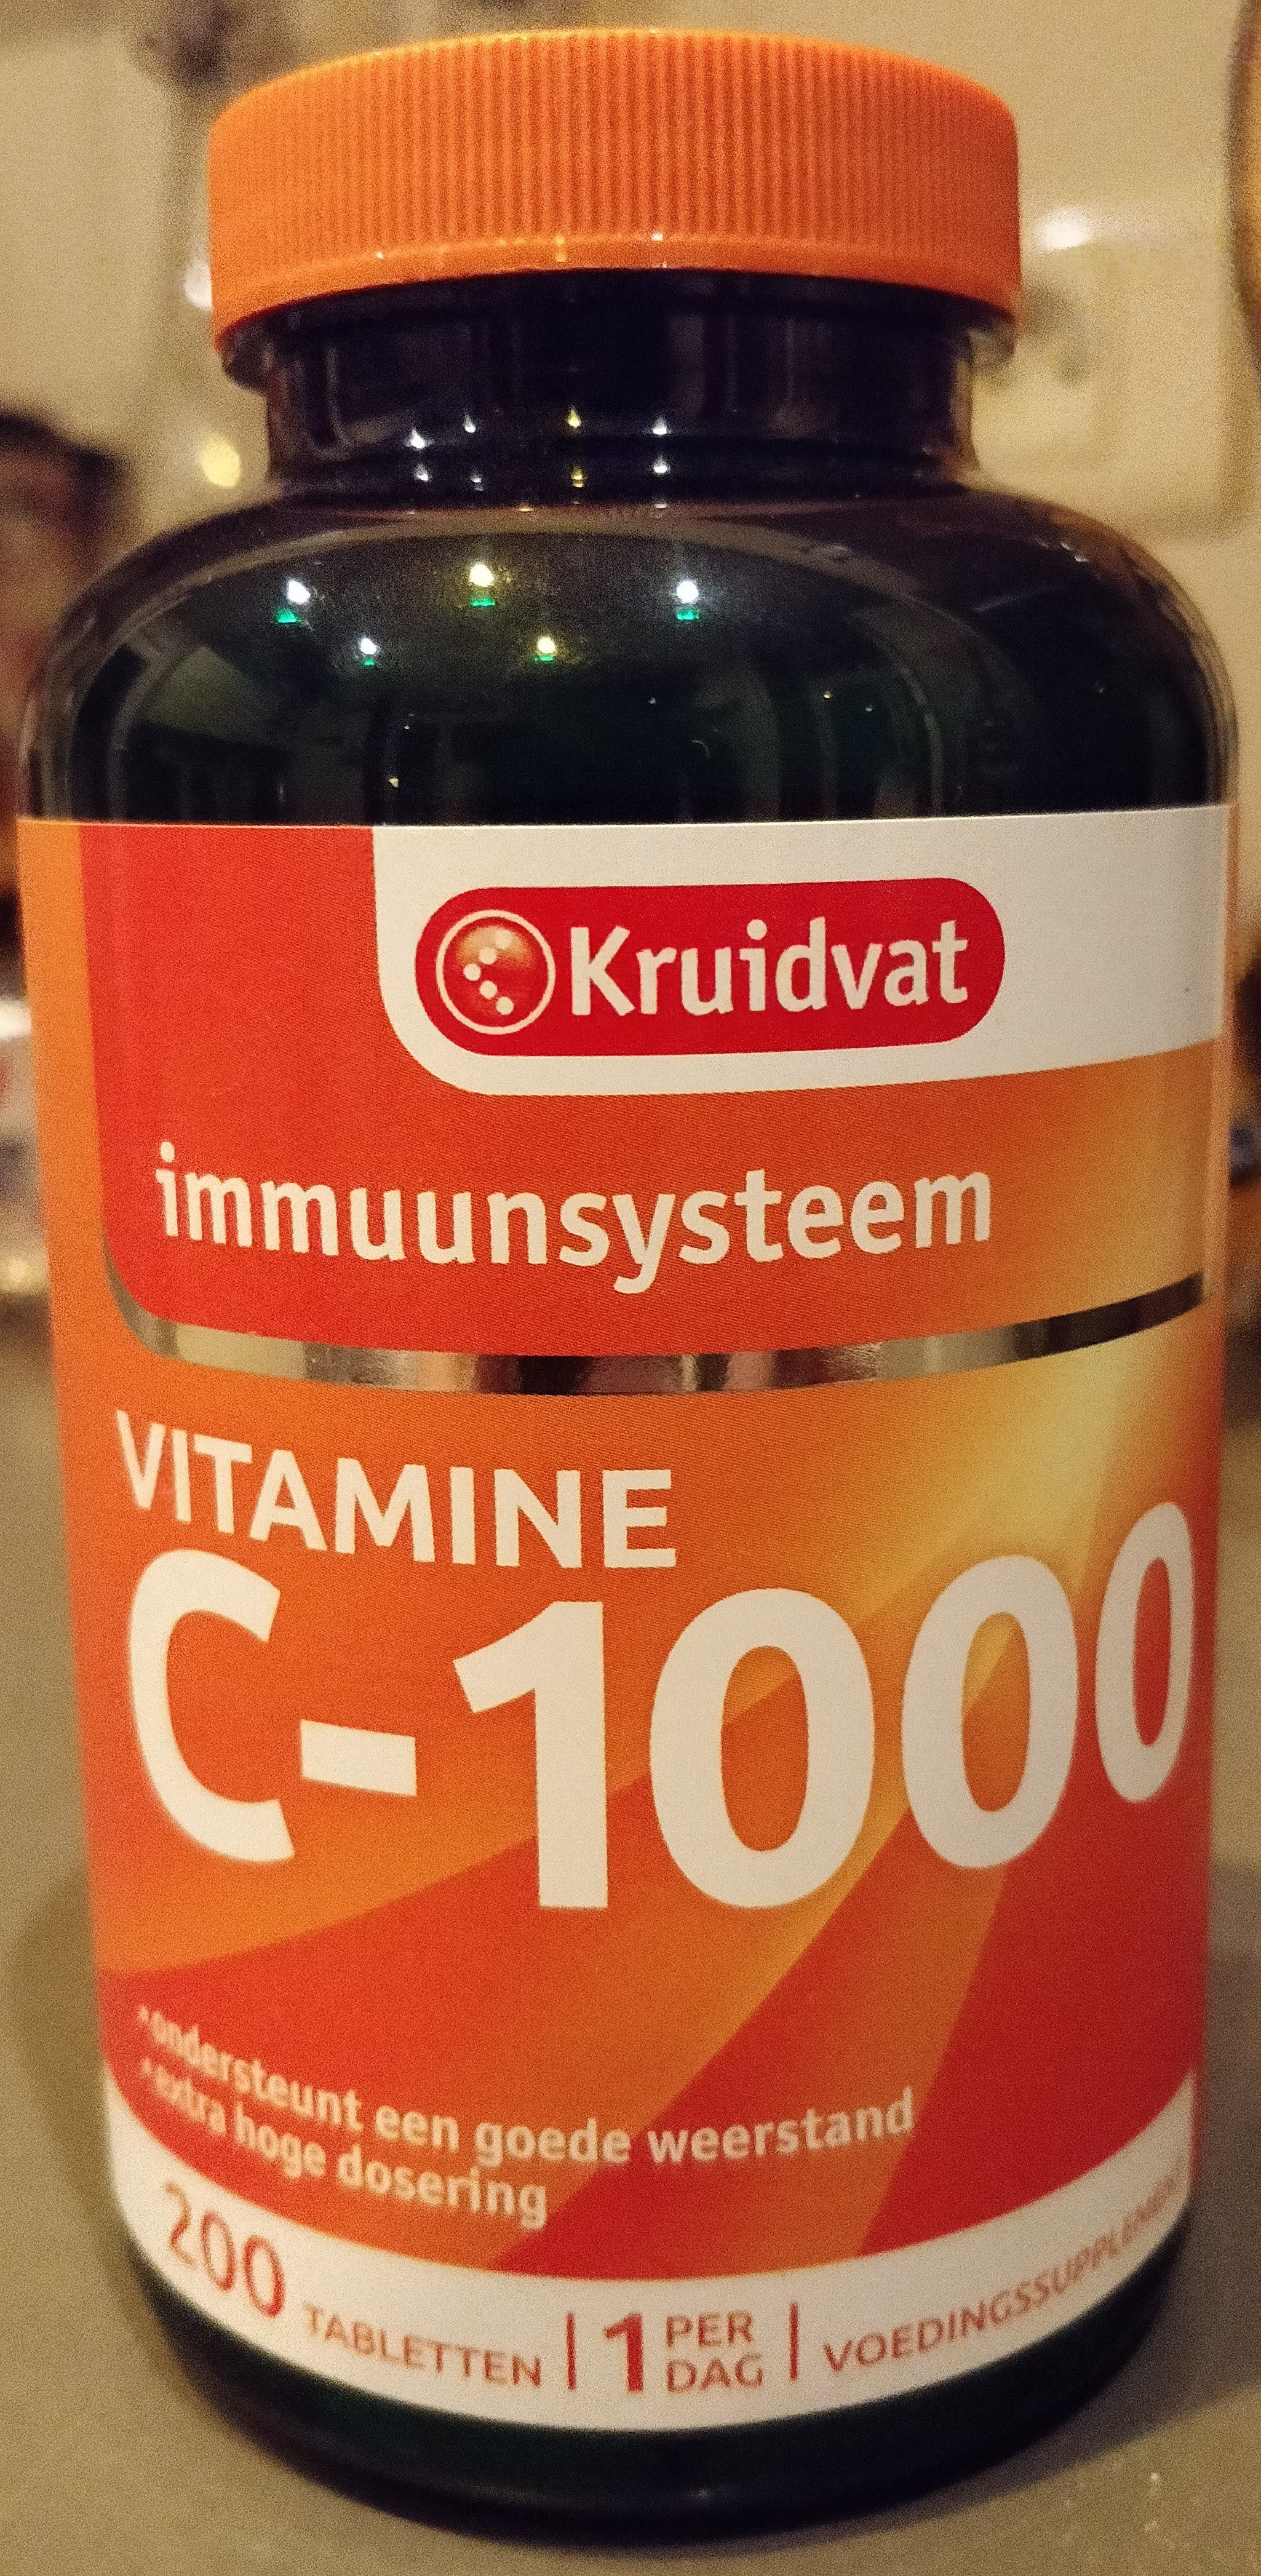 Mijnenveld Ga wandelen President Vitamine C-1000 - Kruidvat - 200 tabletten - 264g